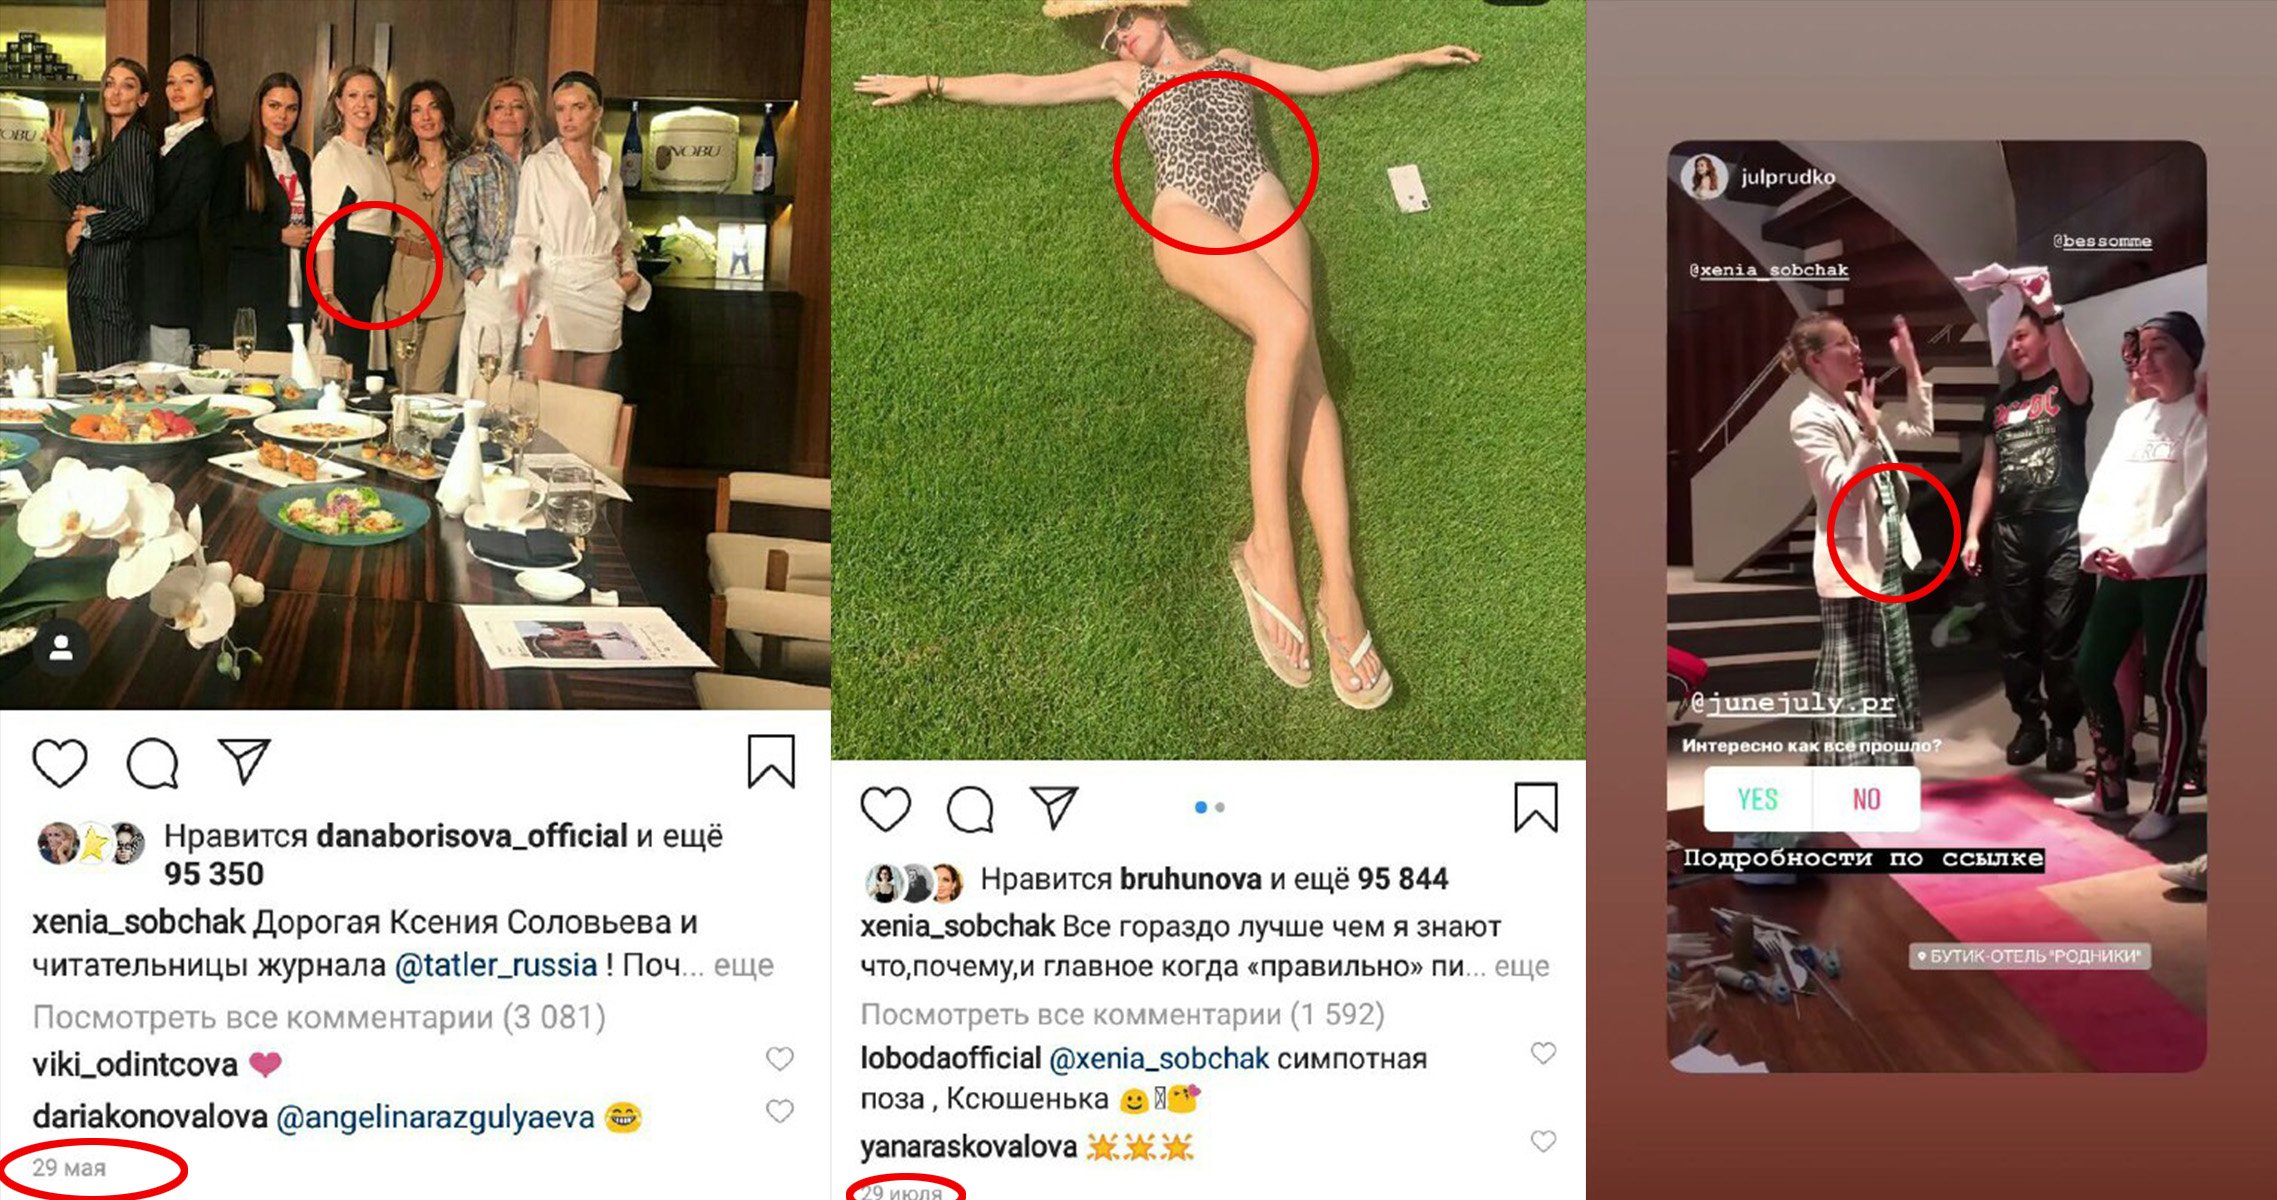 Ксения Собчак вышла с вечеринки без трусиков зато видно киску